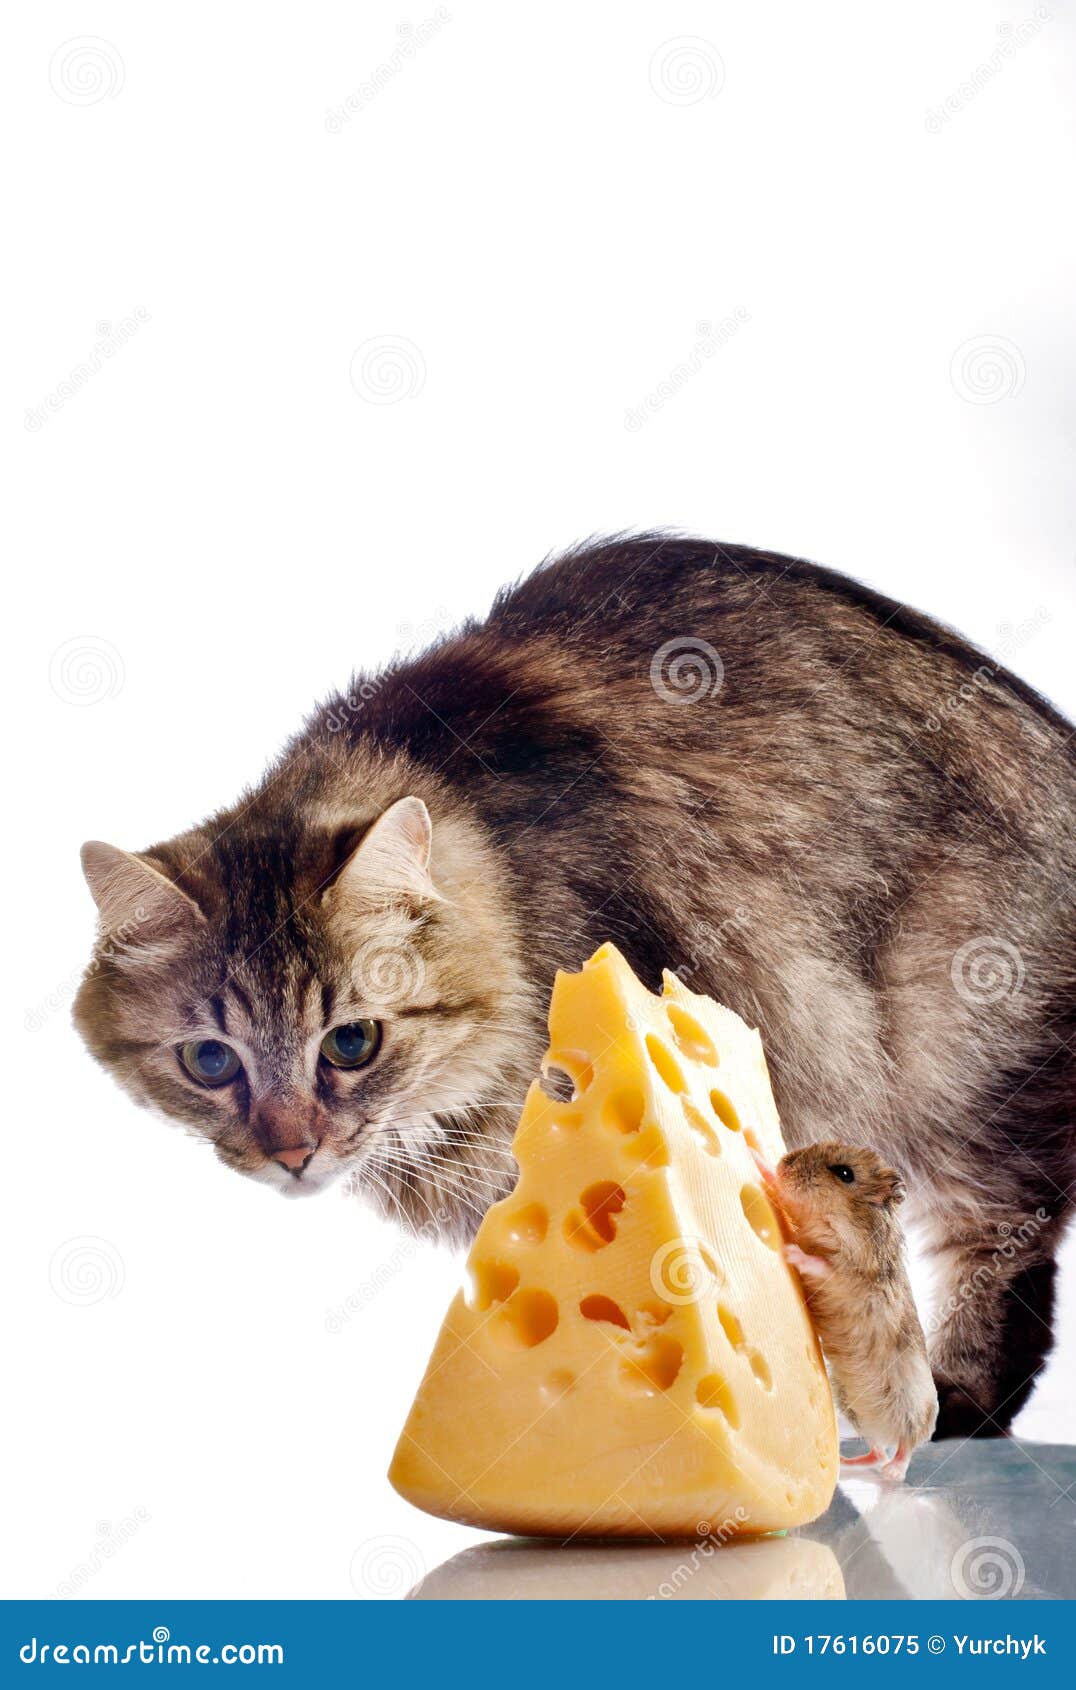 можно ли котам давать сыр